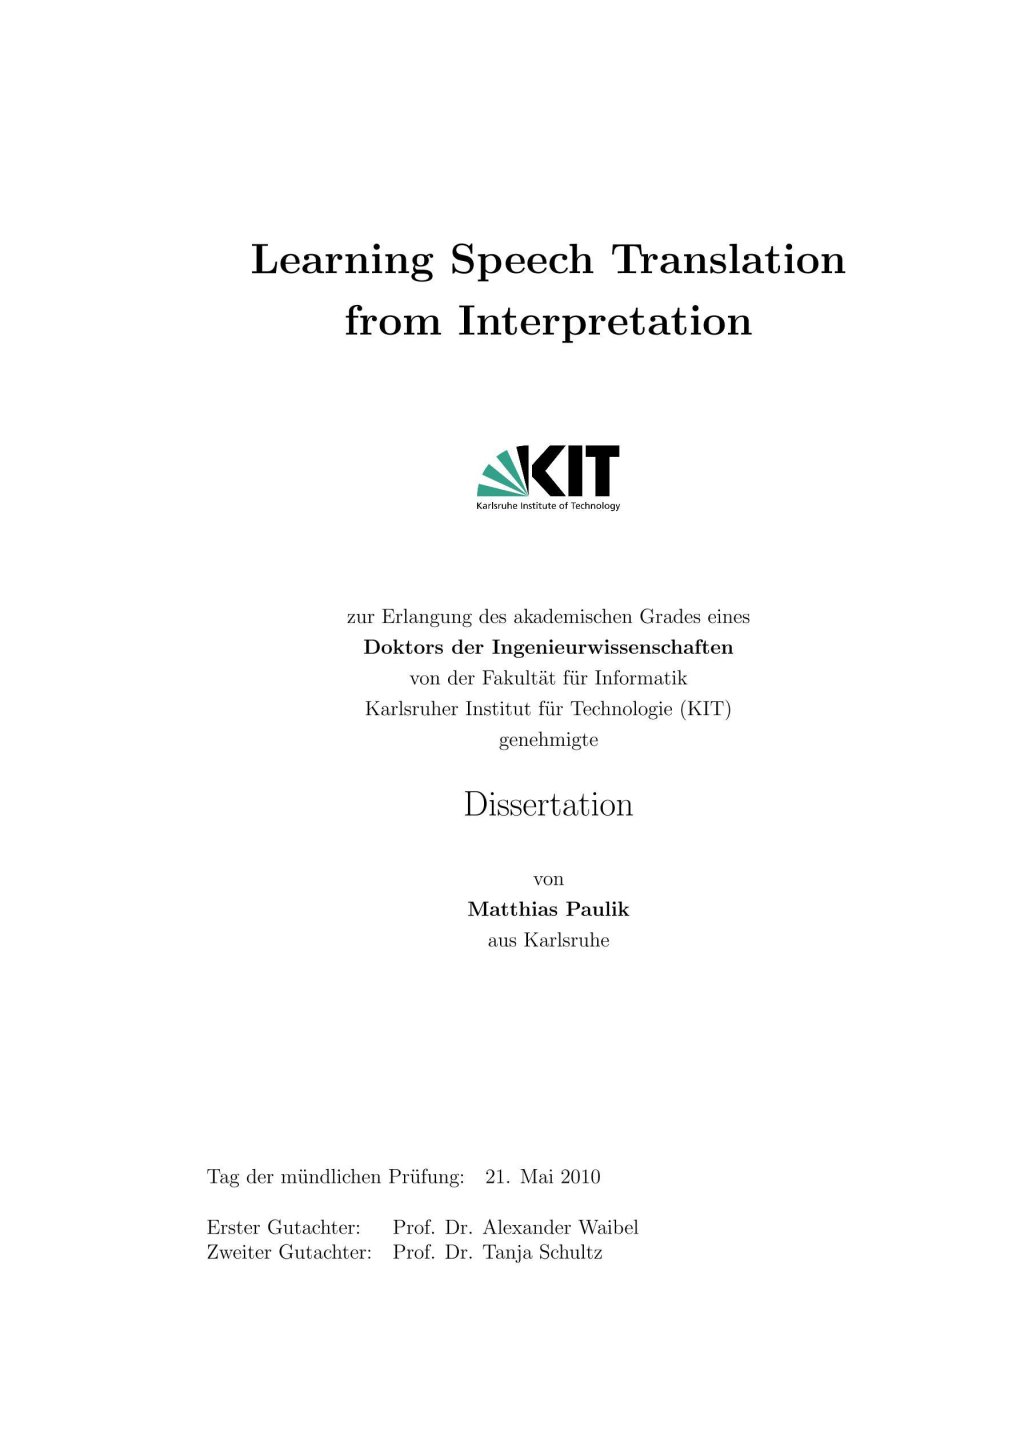 Learning Speech Translation from Interpretation